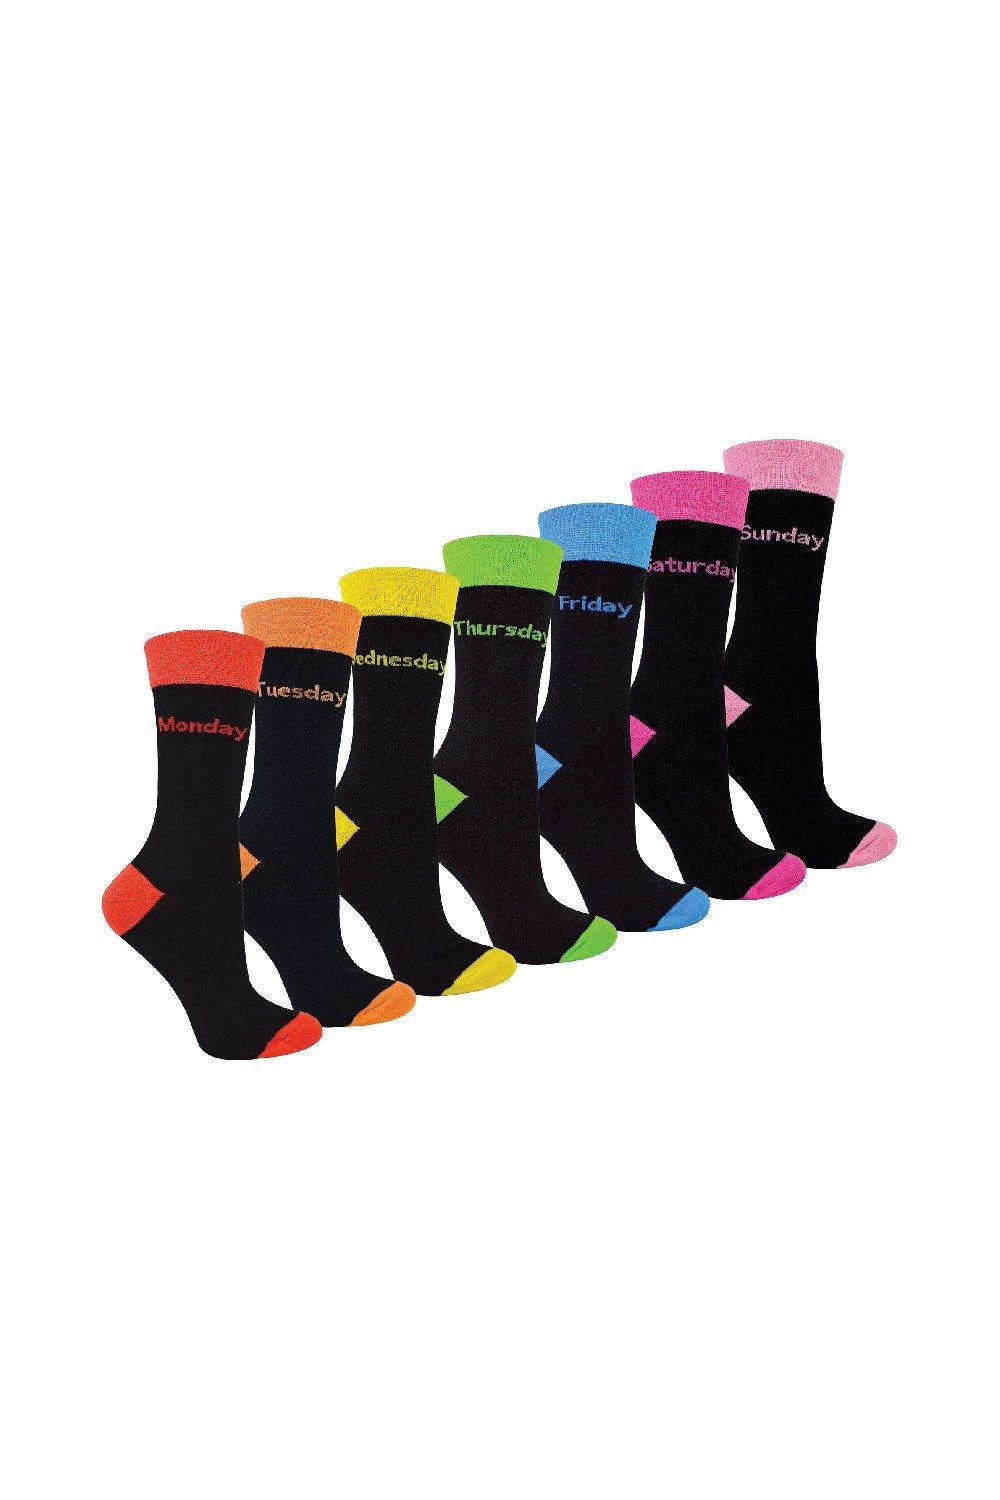 7 Pack Days Of The Week Socks - Black Novelty Dress Socks